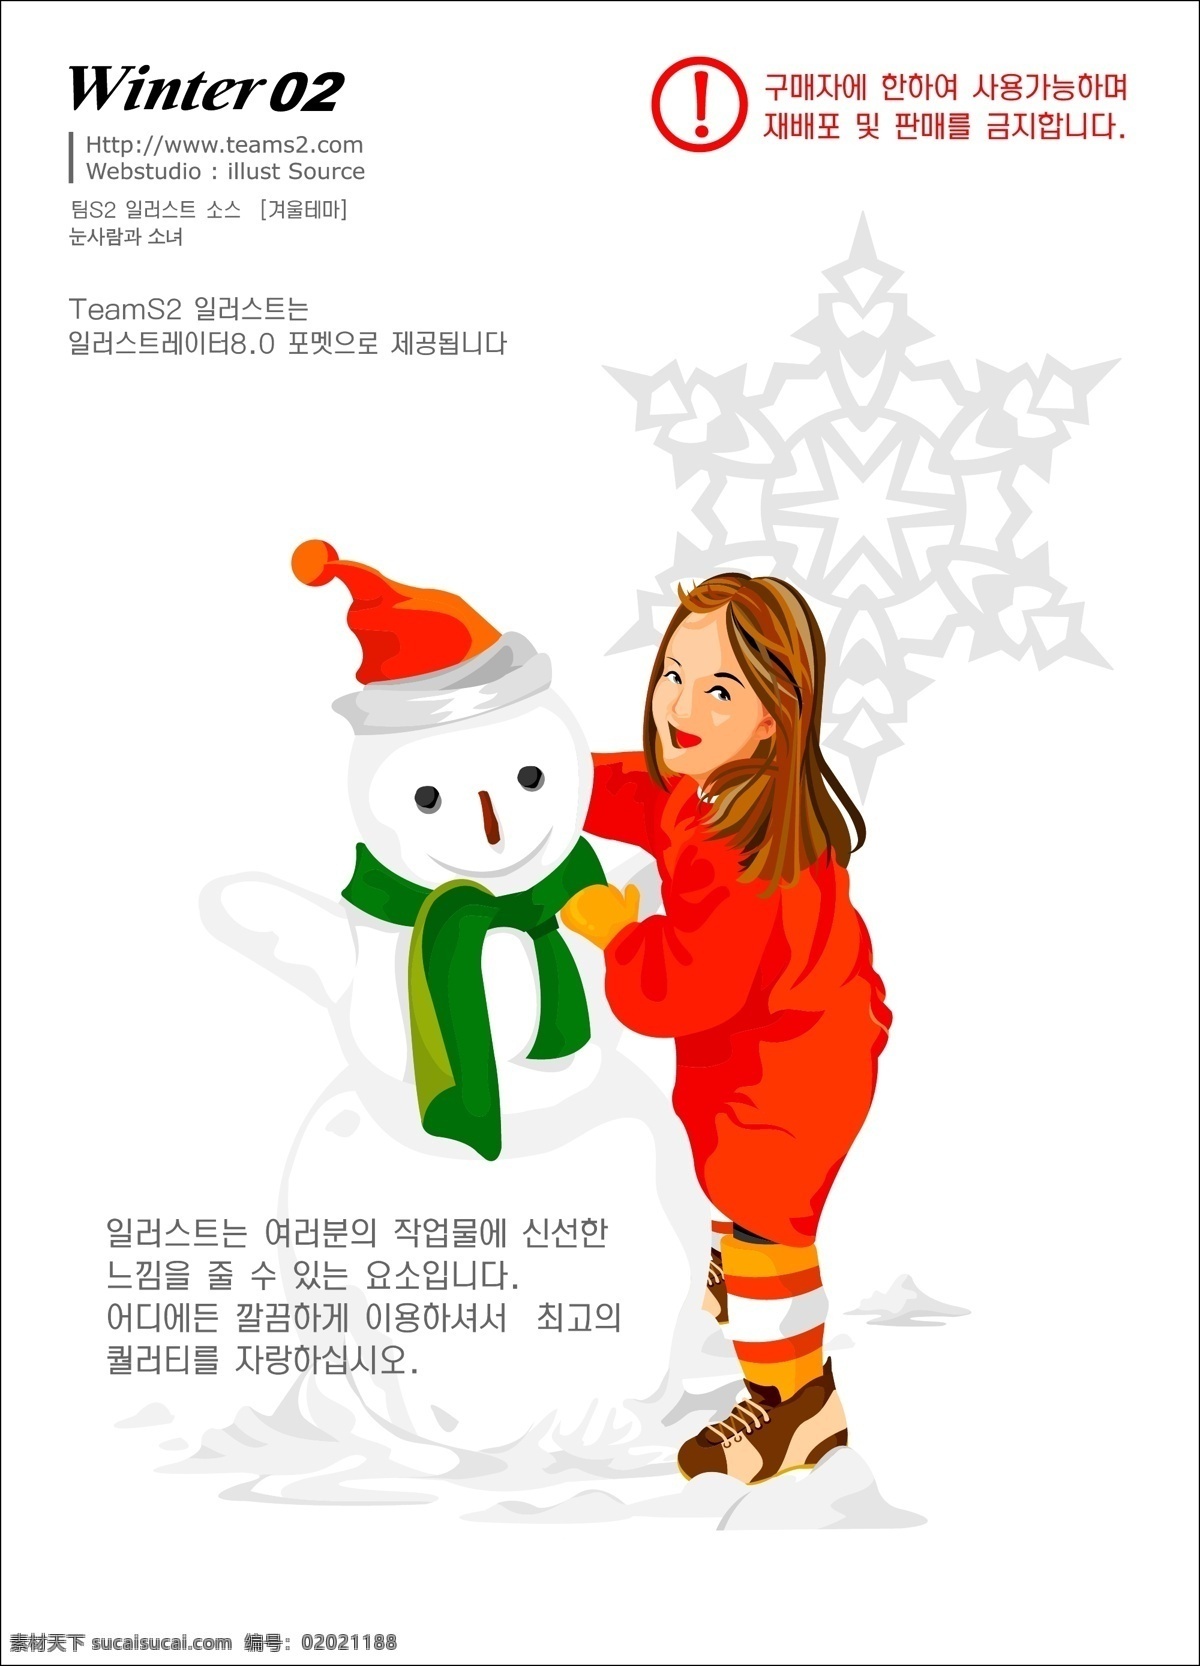 韩国 圣诞 美女 堆 雪人 矢量图 标签cdr 卡通cdr 卡通素材 女孩卡通图 男孩卡通图 其他矢量图